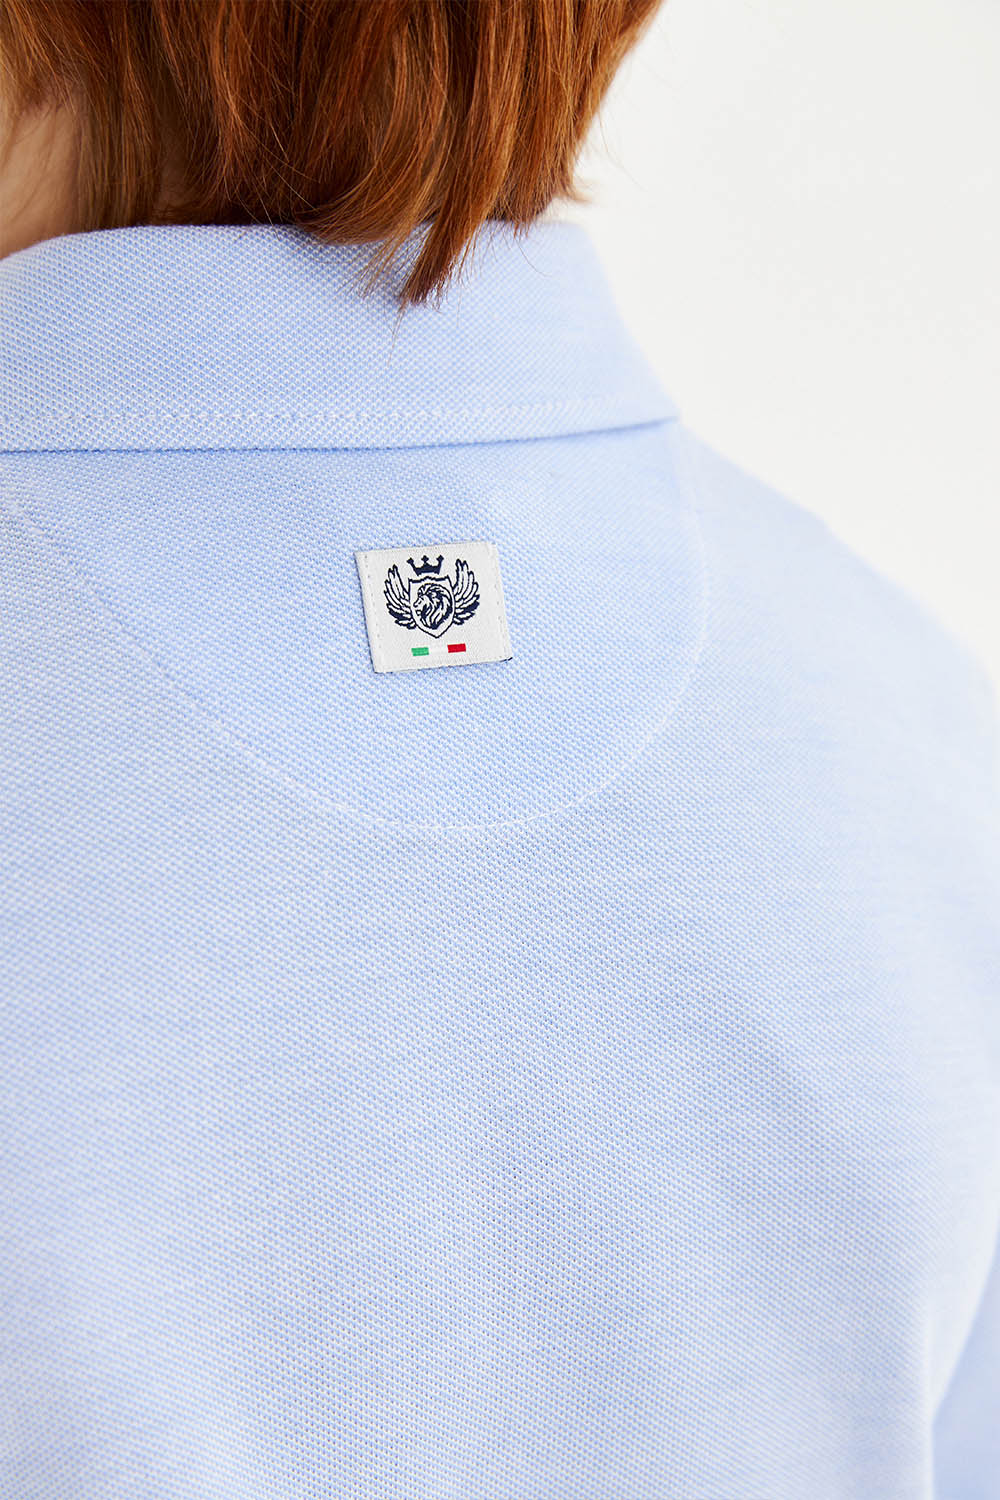 Трикотажная сорочка Comfort из 100% хлопка на кнопках (SSFSB-228-14101-365) Silver spoon